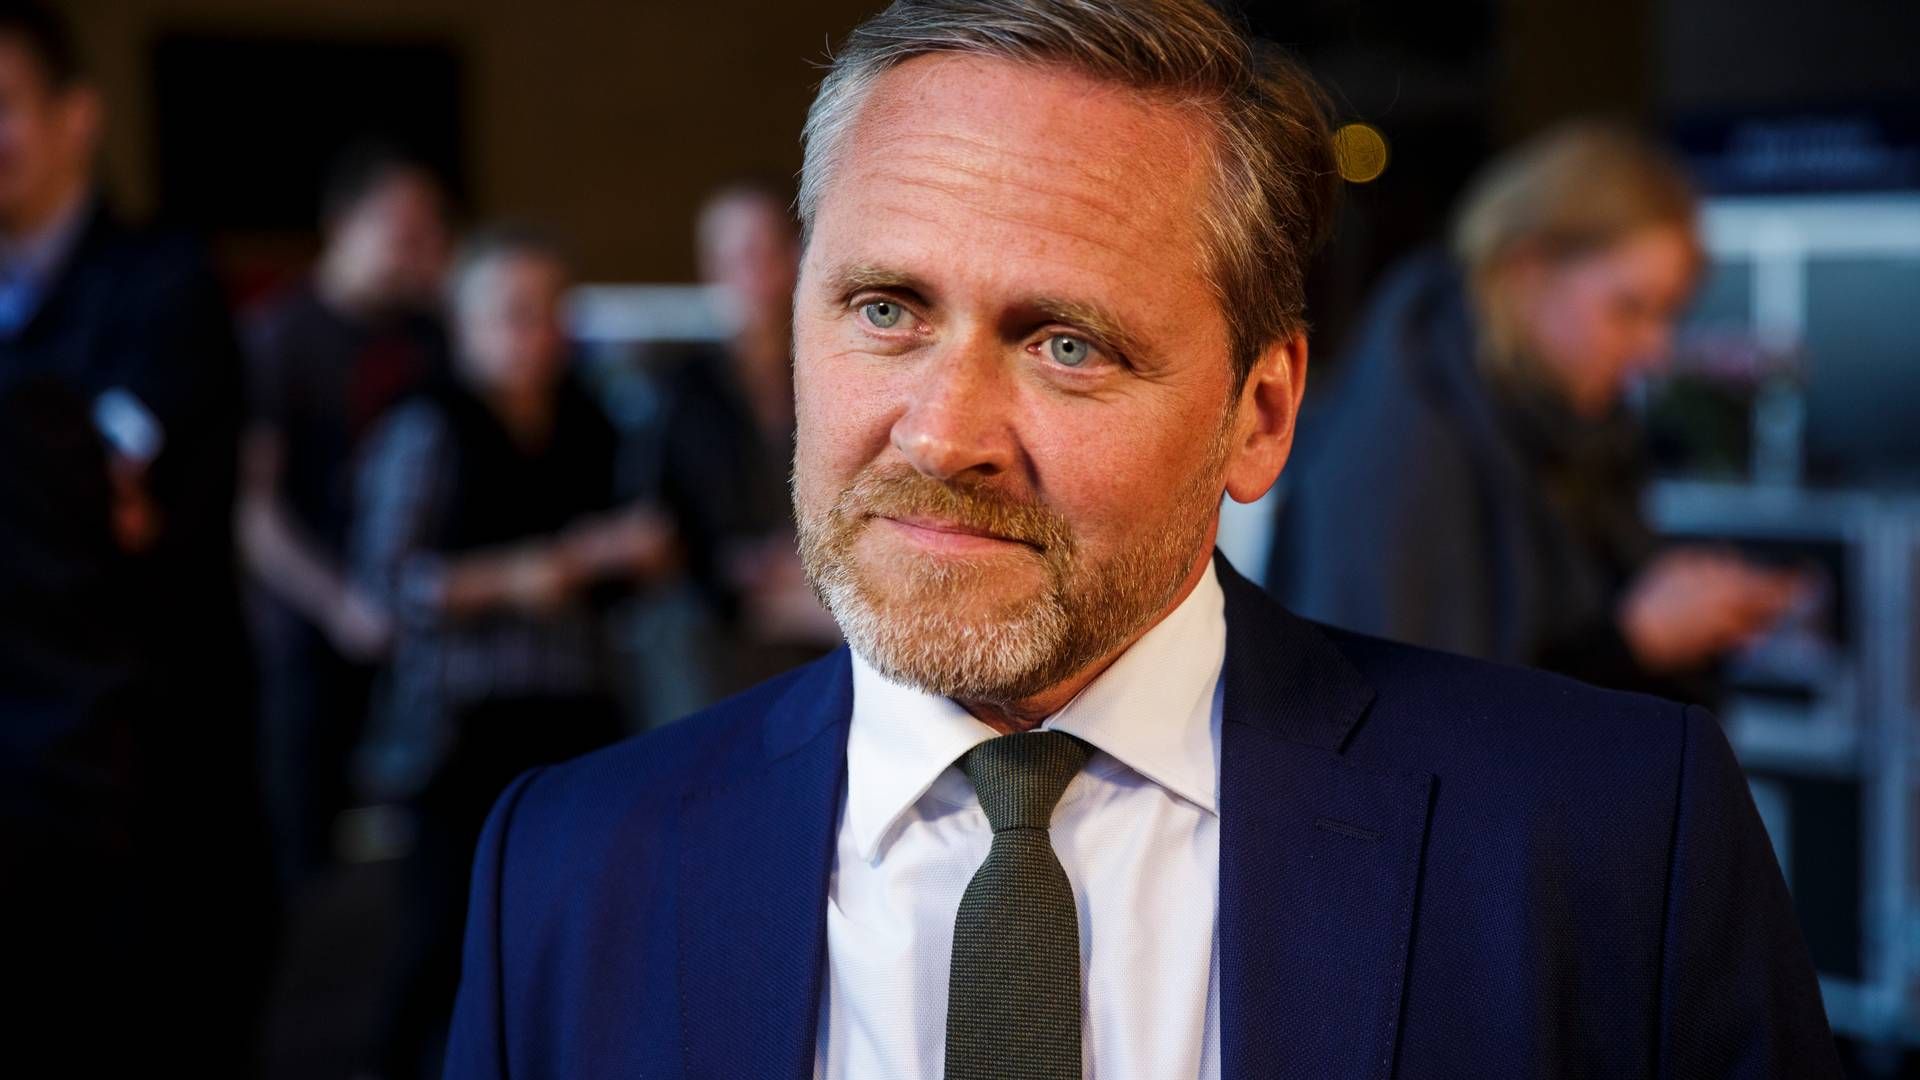 Anders Samuelsen angiver en "mindre skattegæld" som årsag til konkurs i datterselskab. | Foto: Anders Rye Skjoldjensen